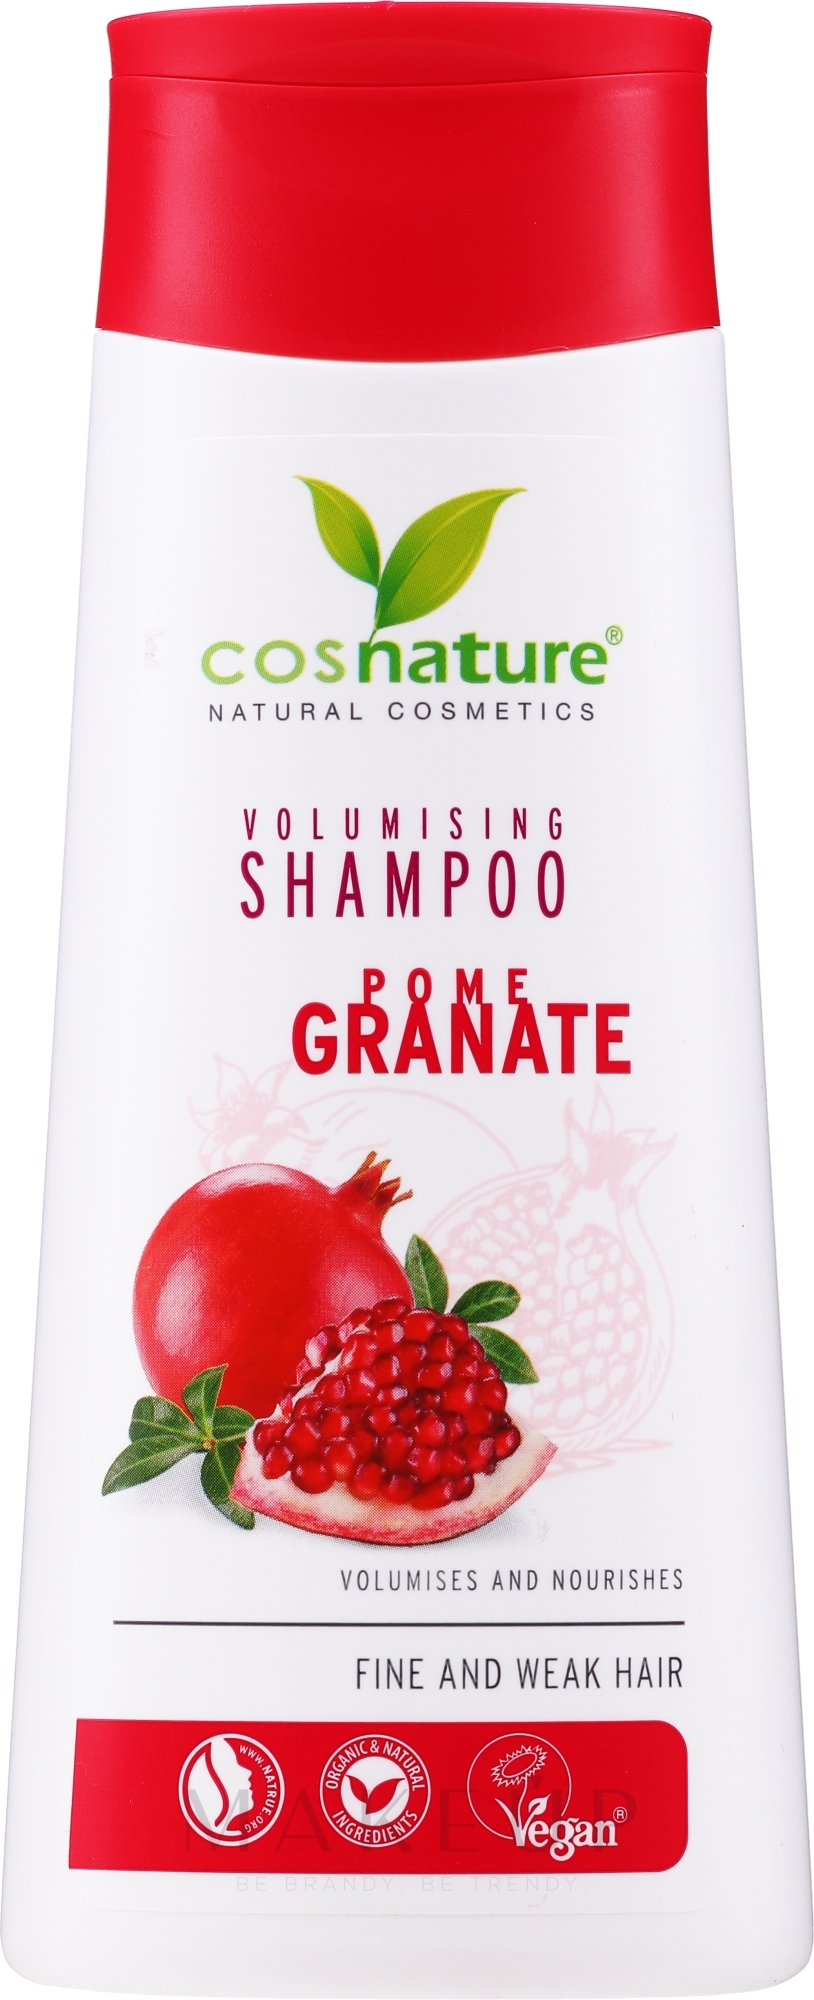 cosnature szampon wizaz